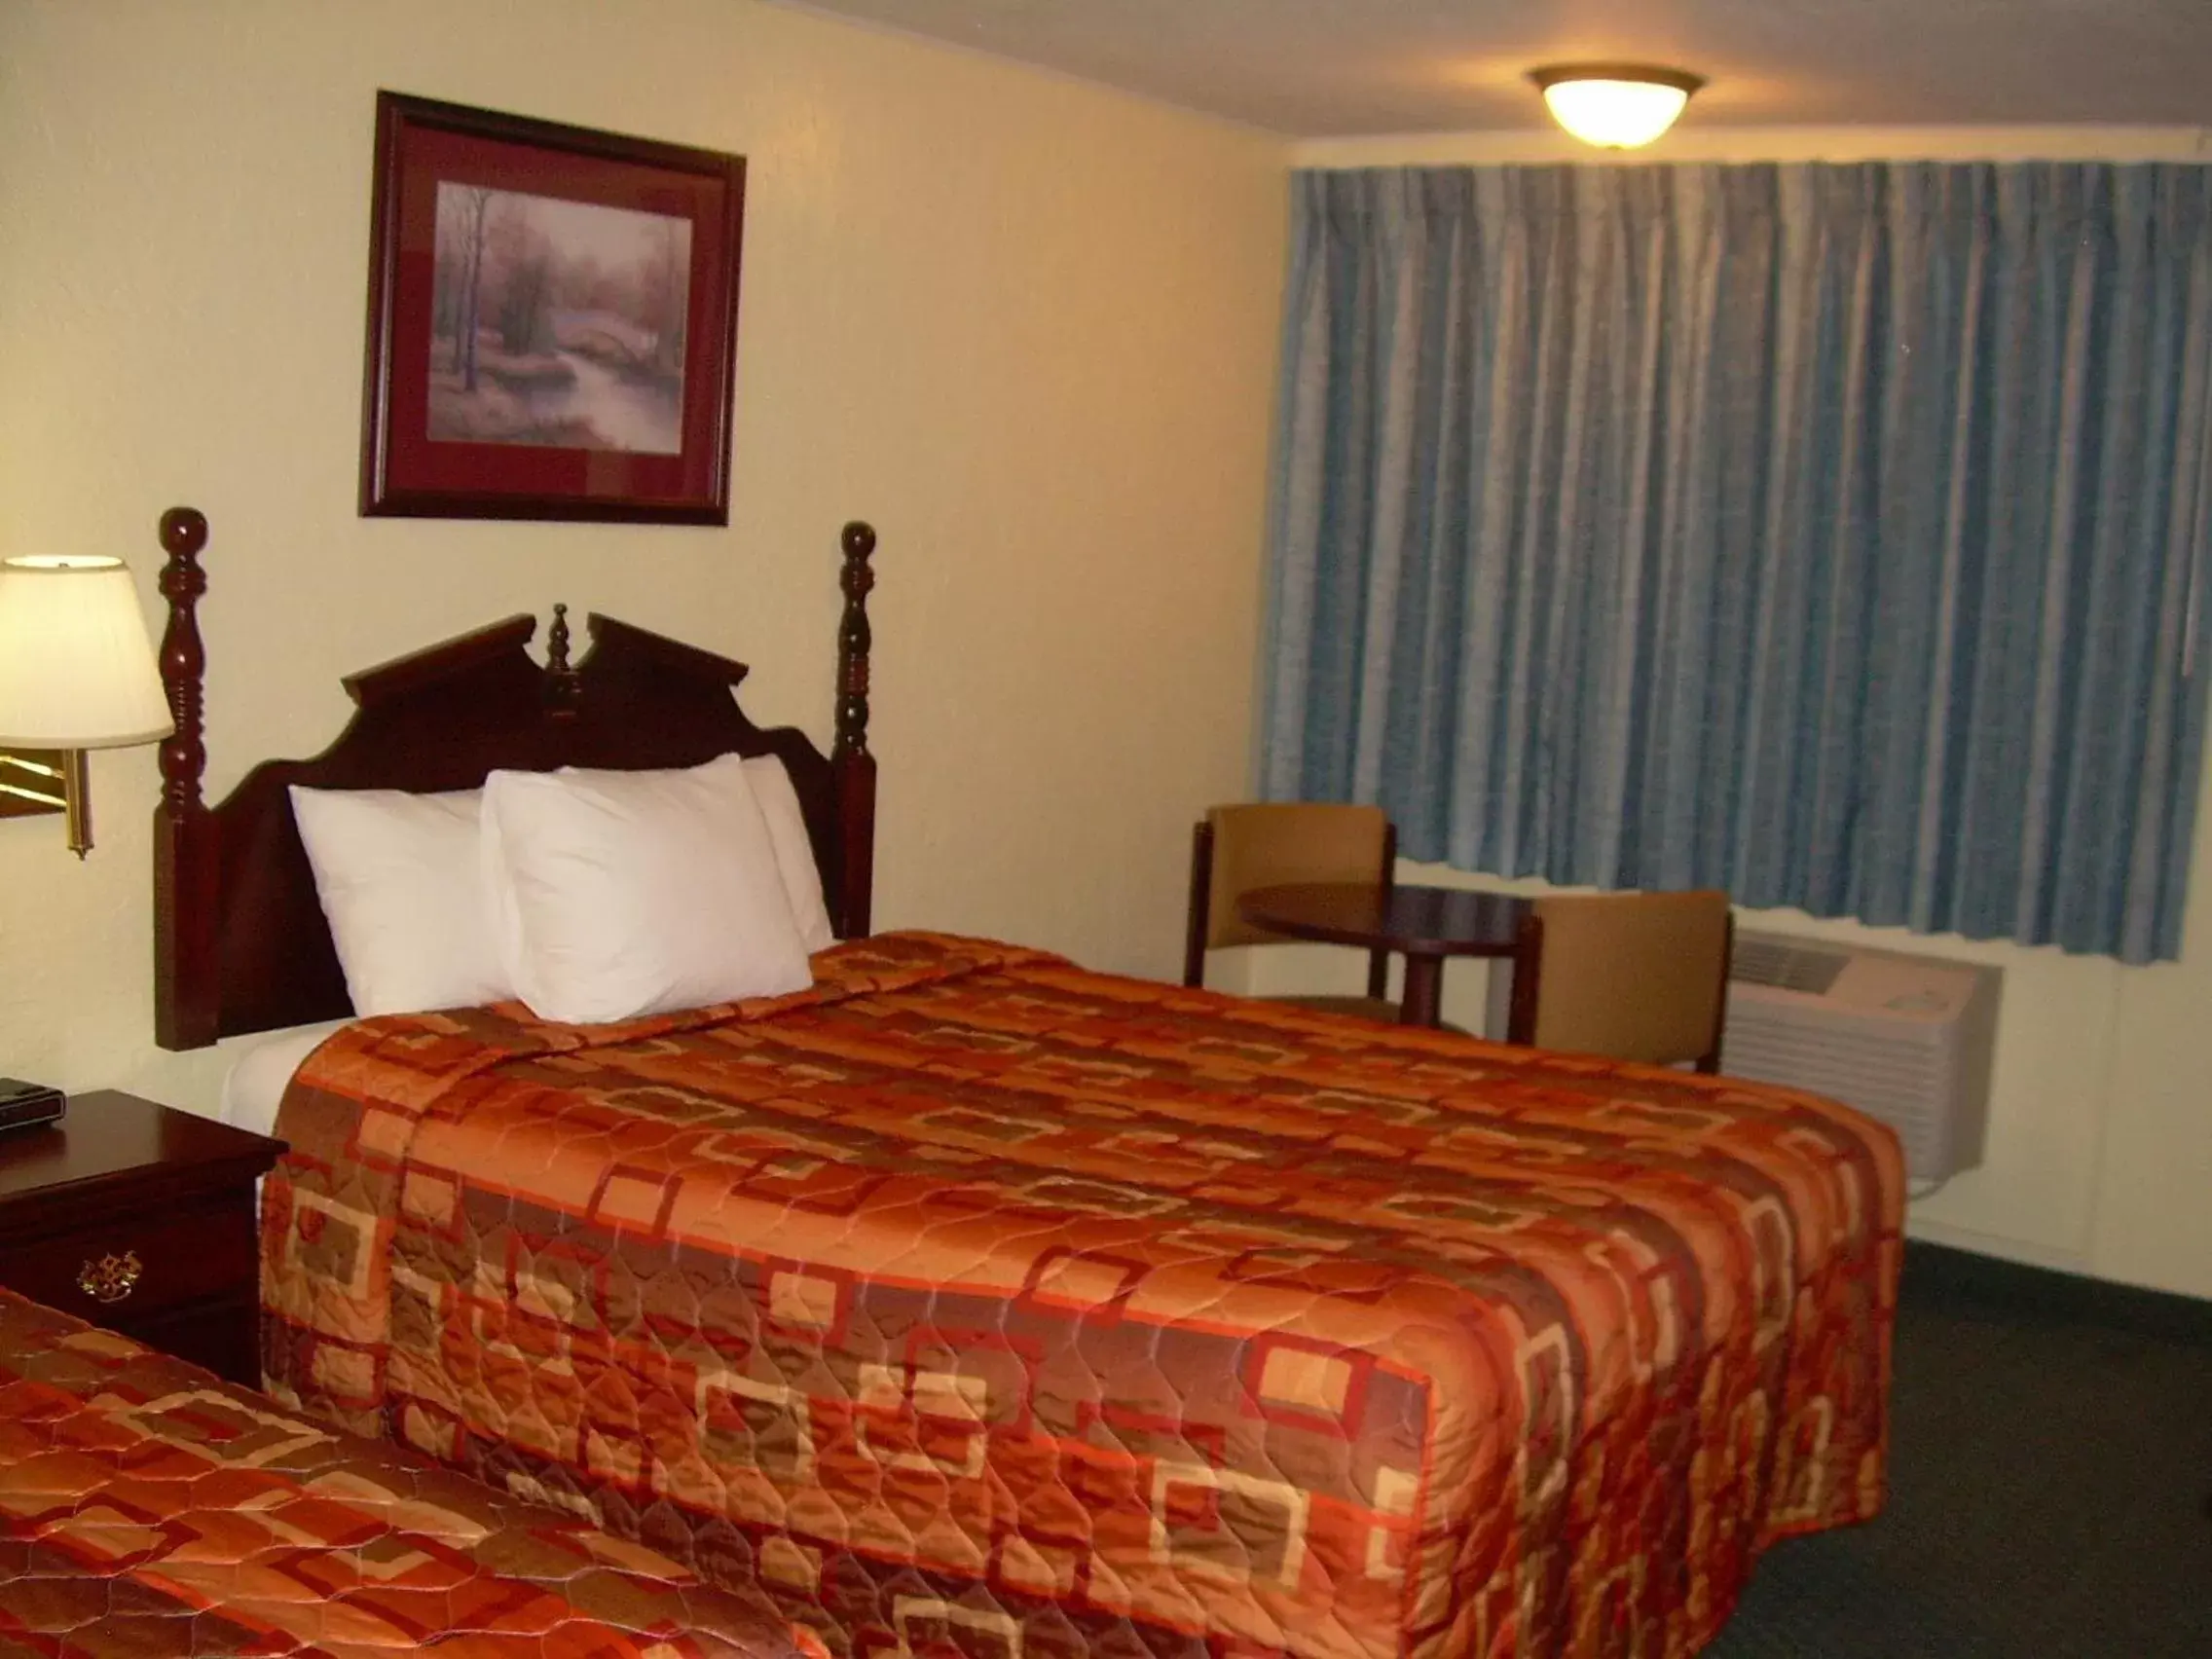 Bed in 83 motel